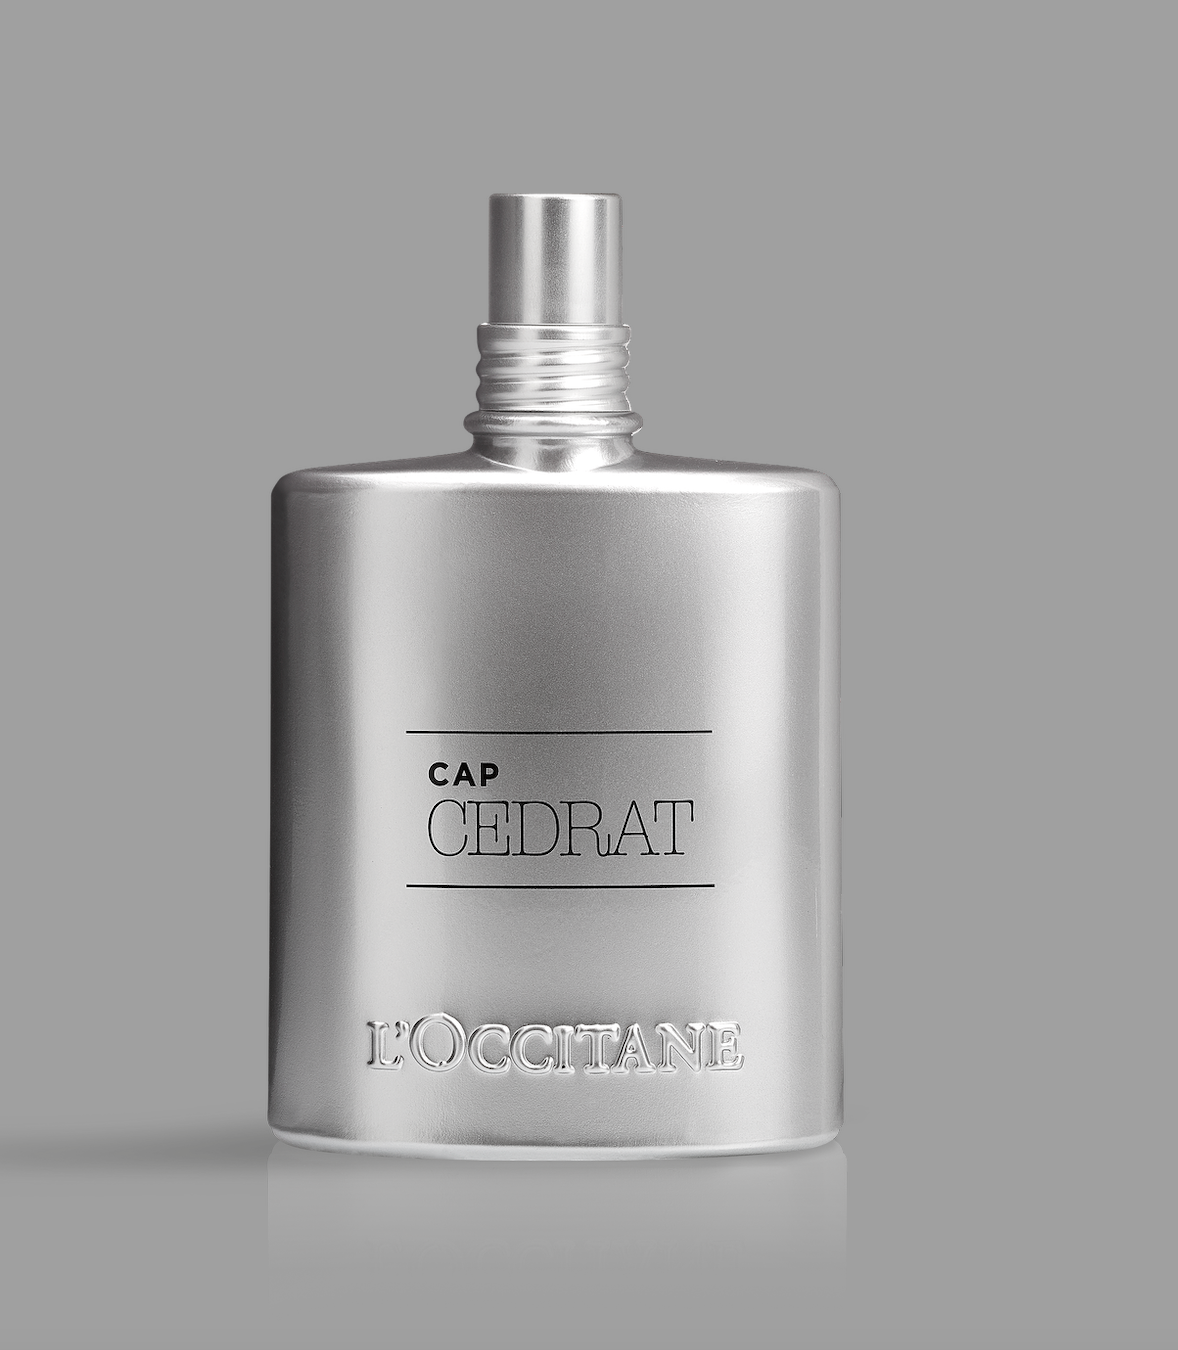 L'Occitane CAP CEDRAT Perfume EDT 75ML